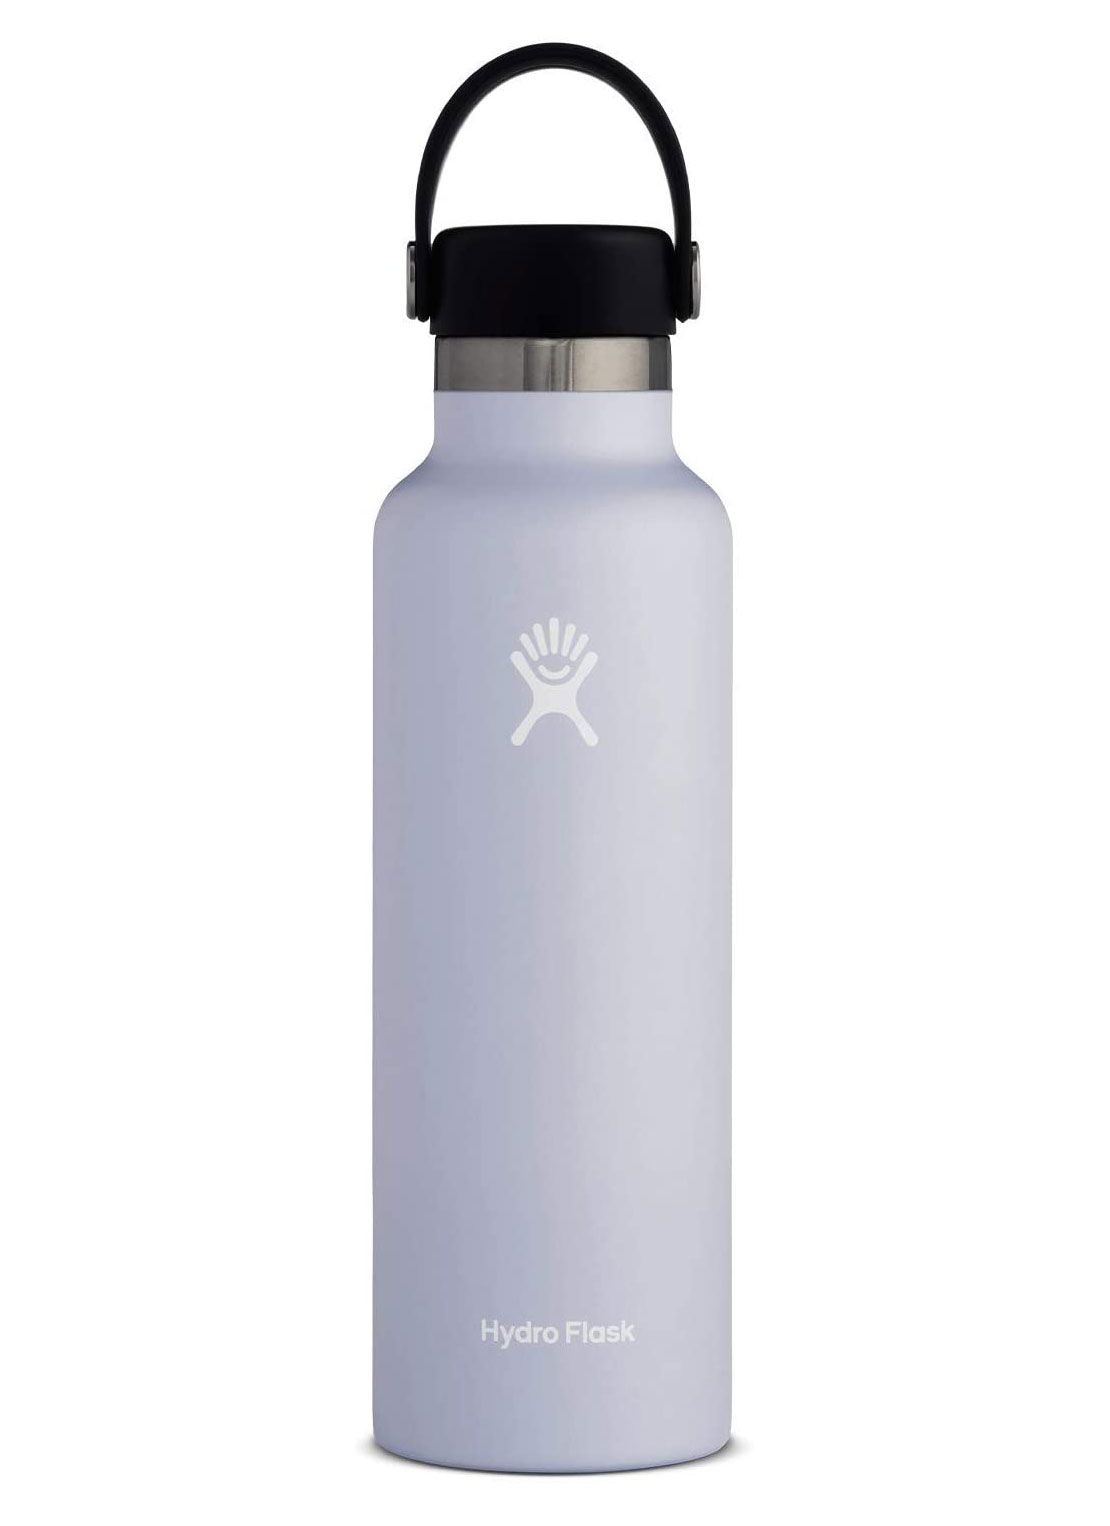 საჩუქრები ქალებისთვის და მისთვის - Hydro Flask სტანდარტული ბოთლის ბოთლი